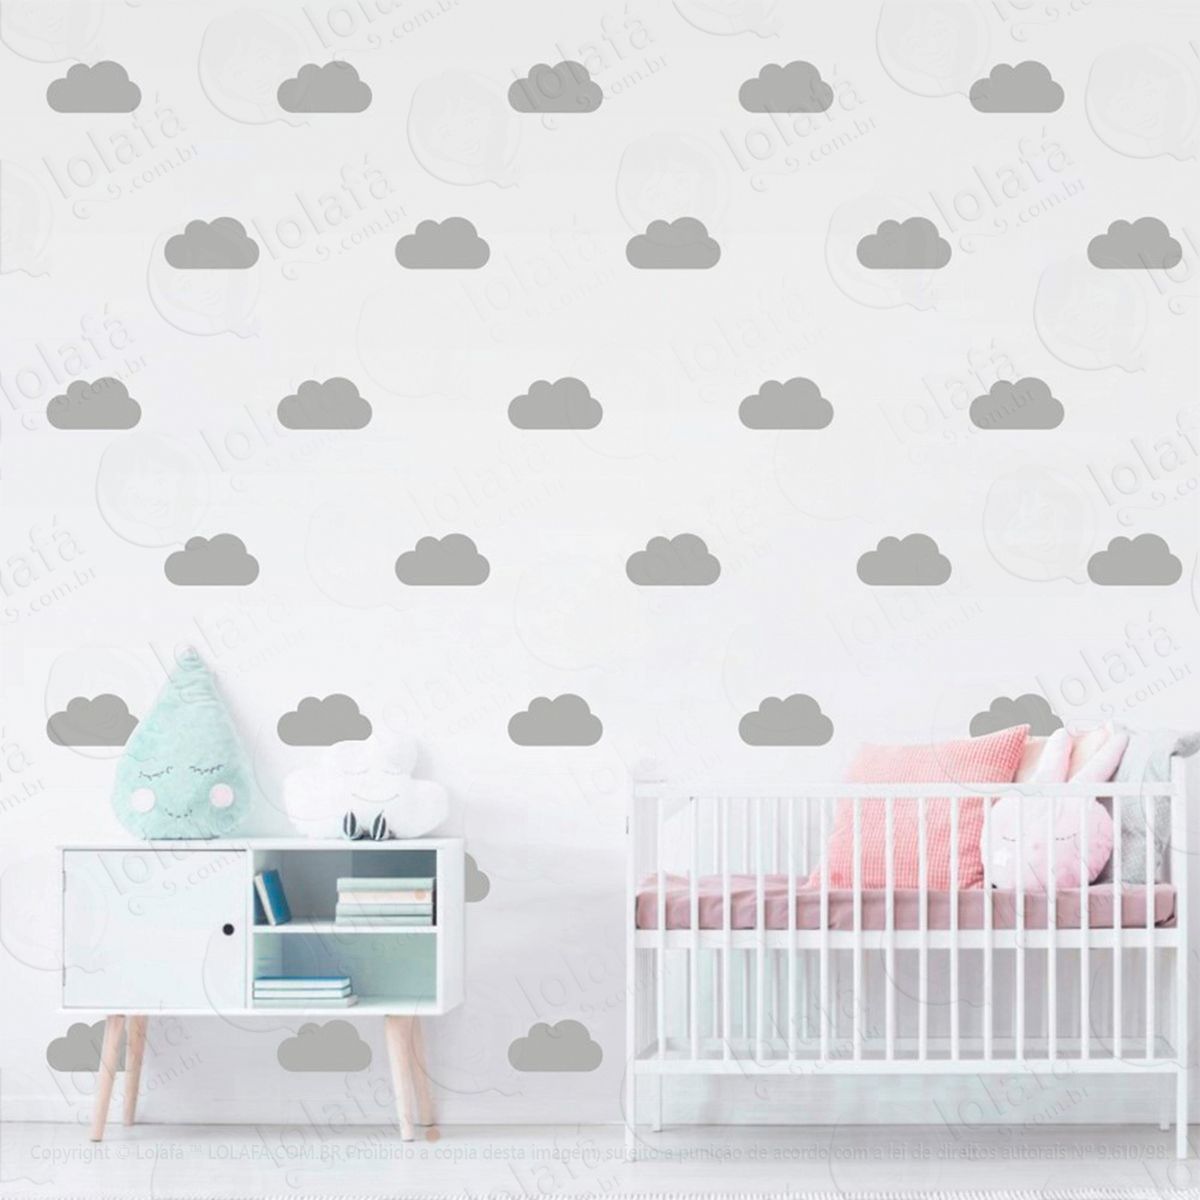 adesivos nuvens 36 peças adesivos para quarto de bebê infantil - mod:932